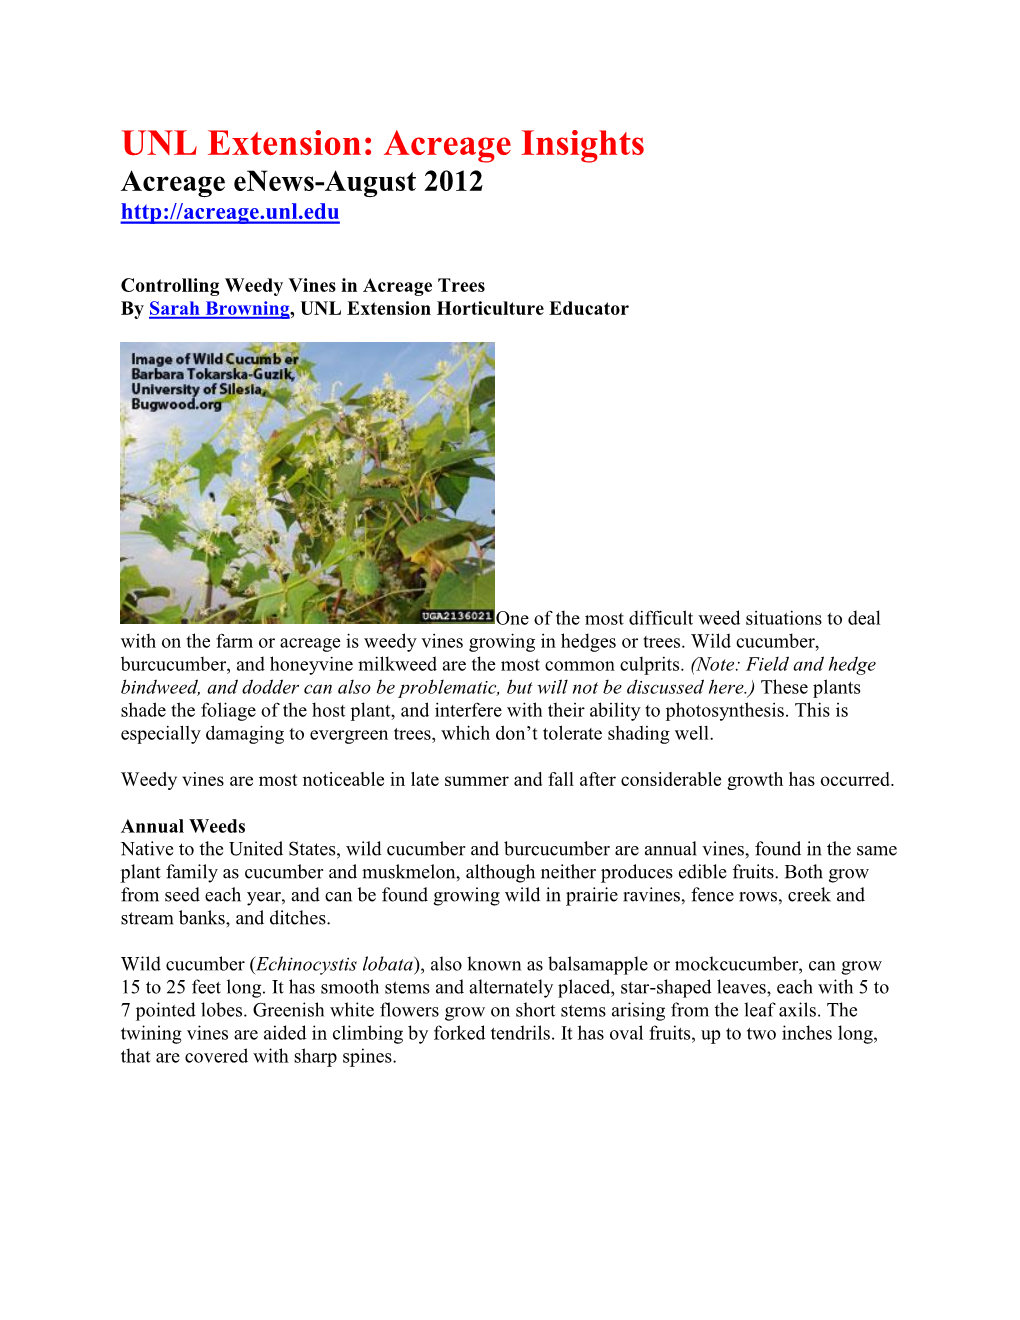 UNL Extension: Acreage Insights Acreage Enews-August 2012